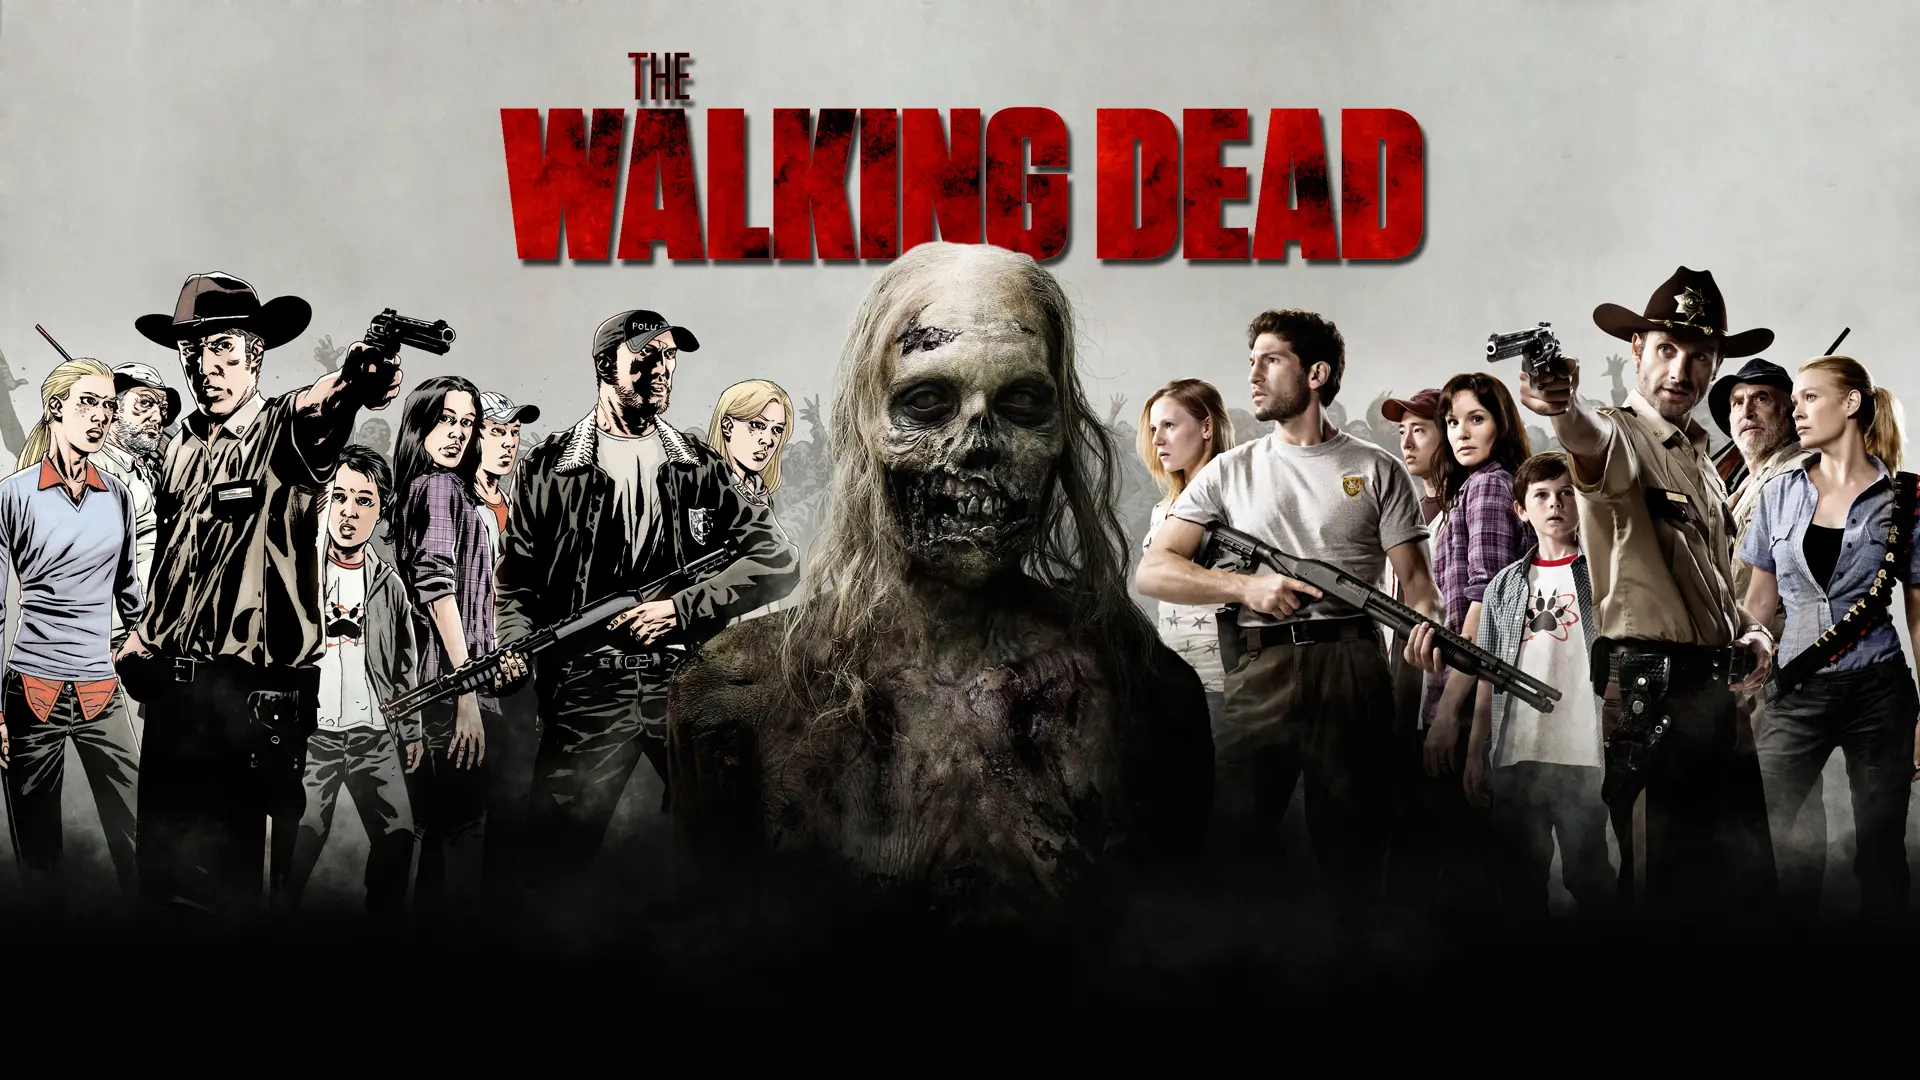 The Walking Dead wallpaper 5